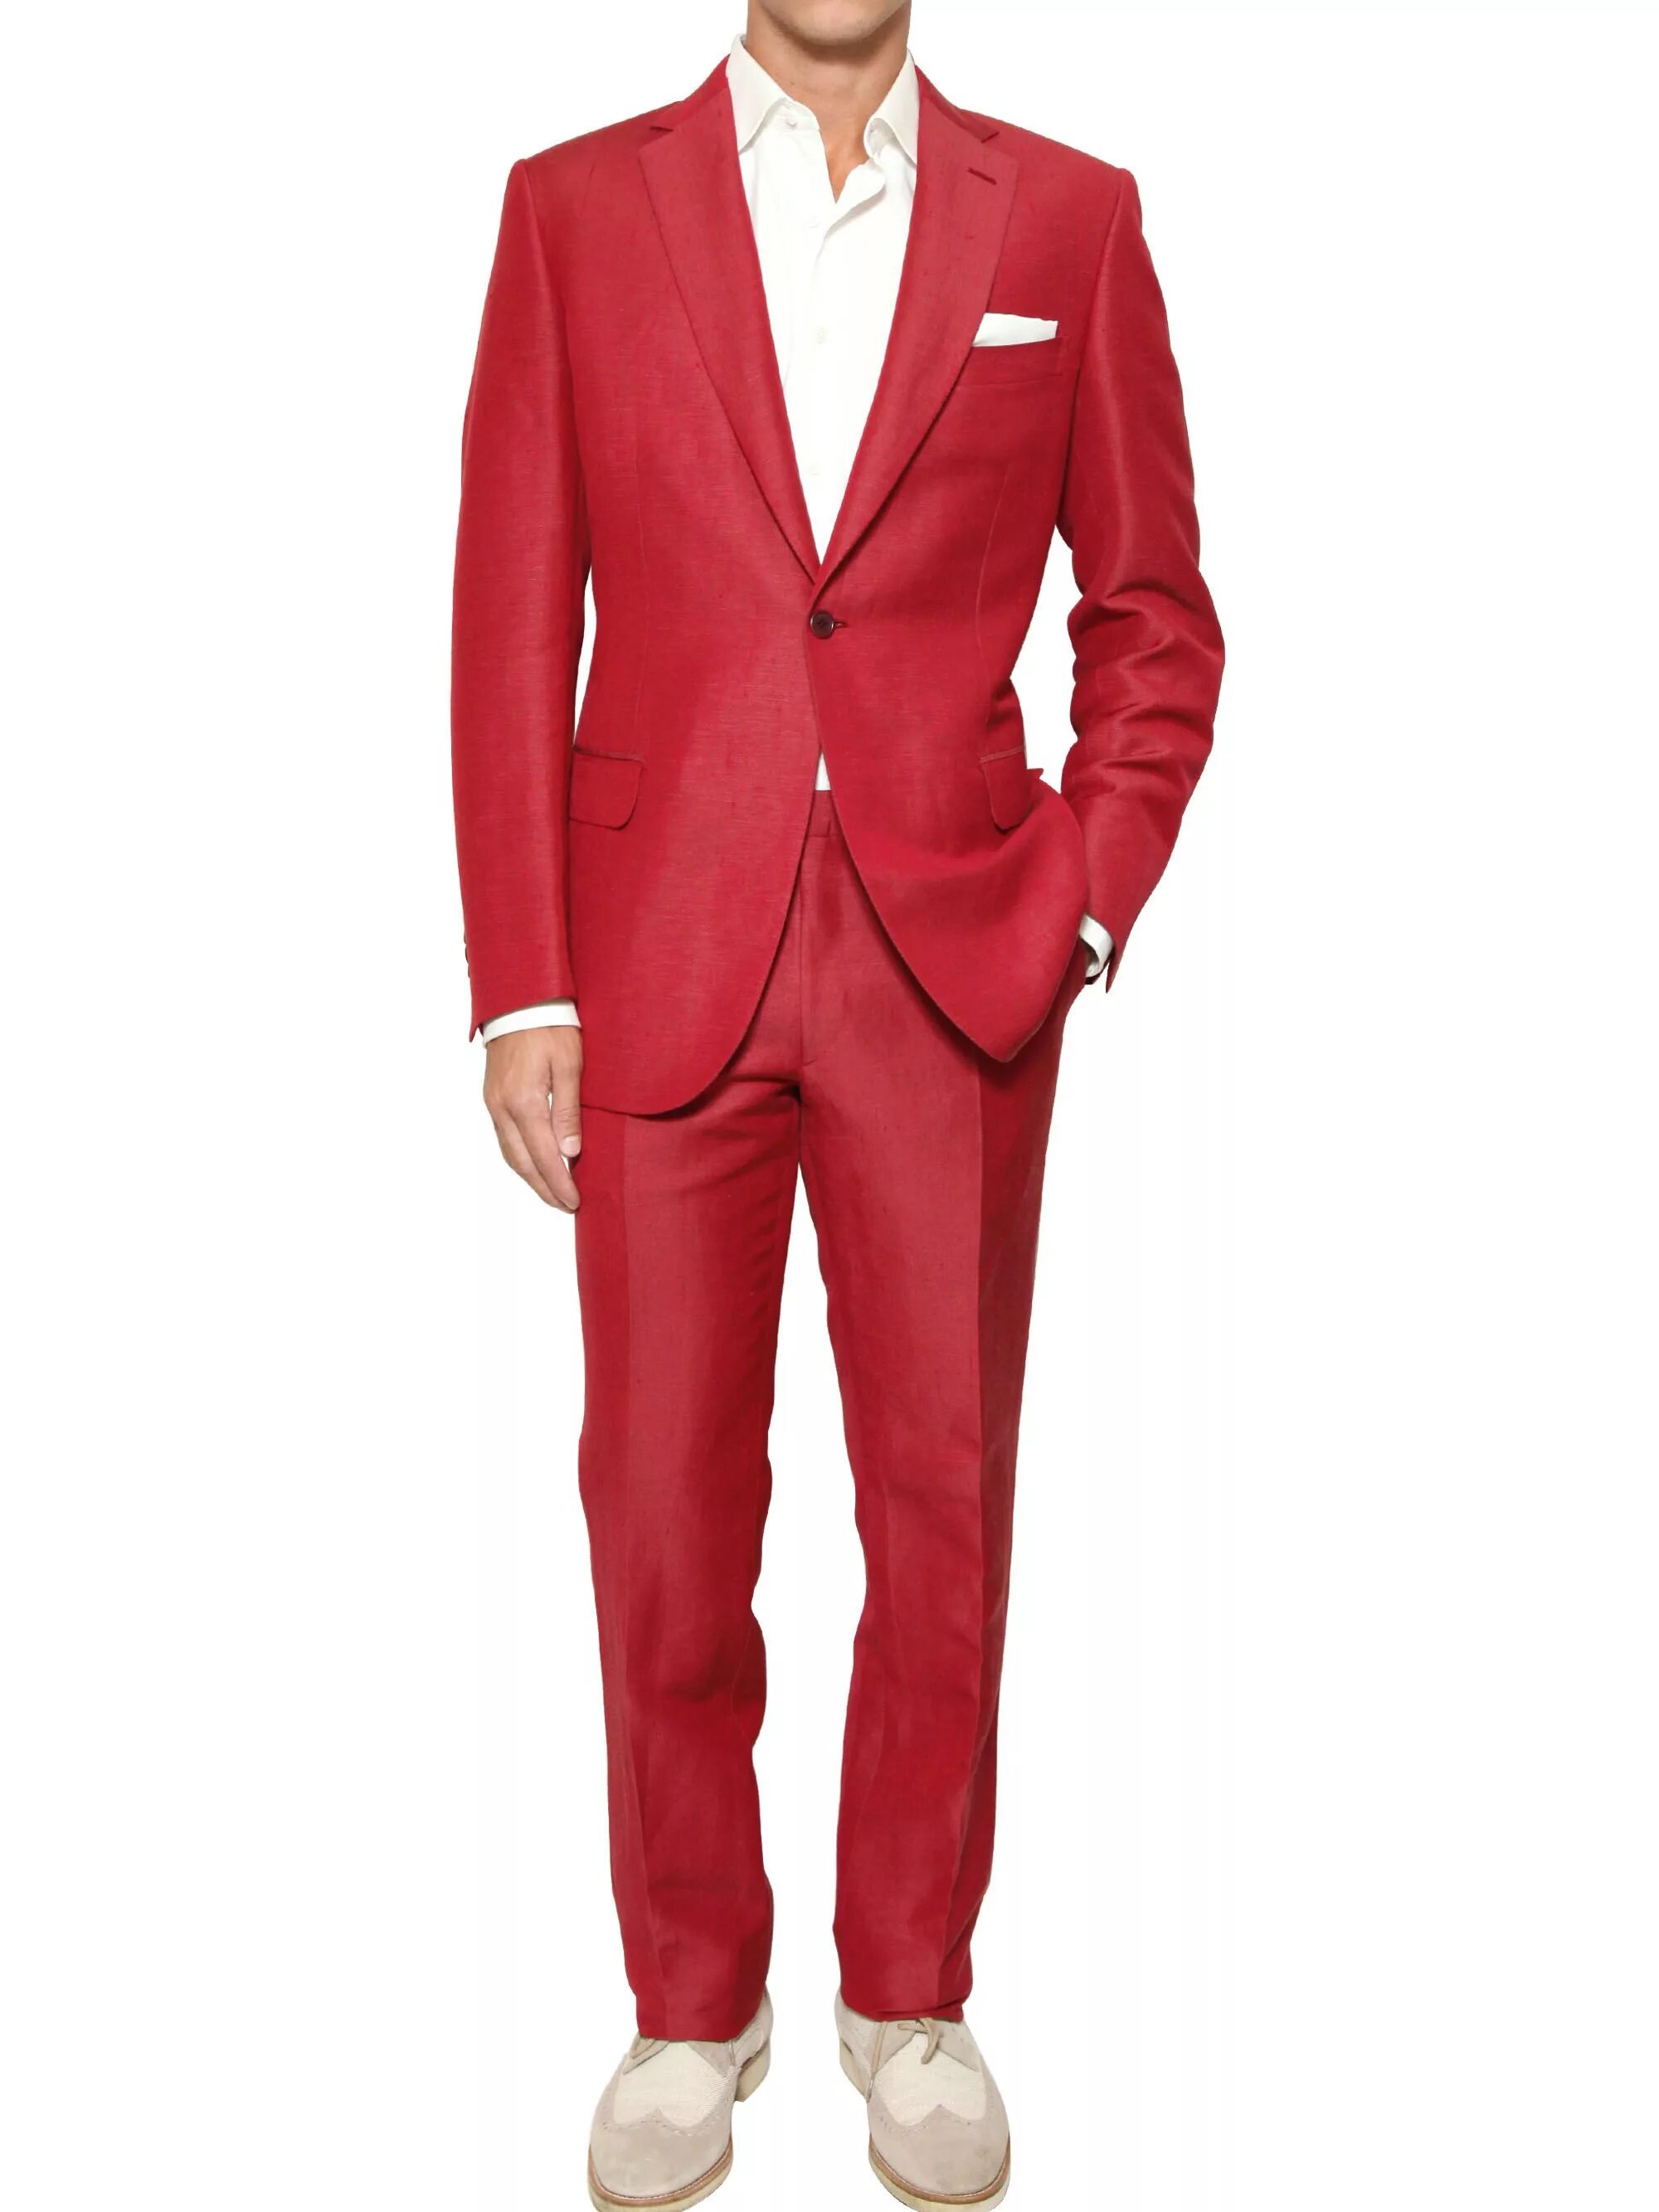 Купить красные мужской костюм. Смокинг Бриони. Красный костюм мужской классический. Мужчина в Красном костюме. Красный строгий костюм мужской.